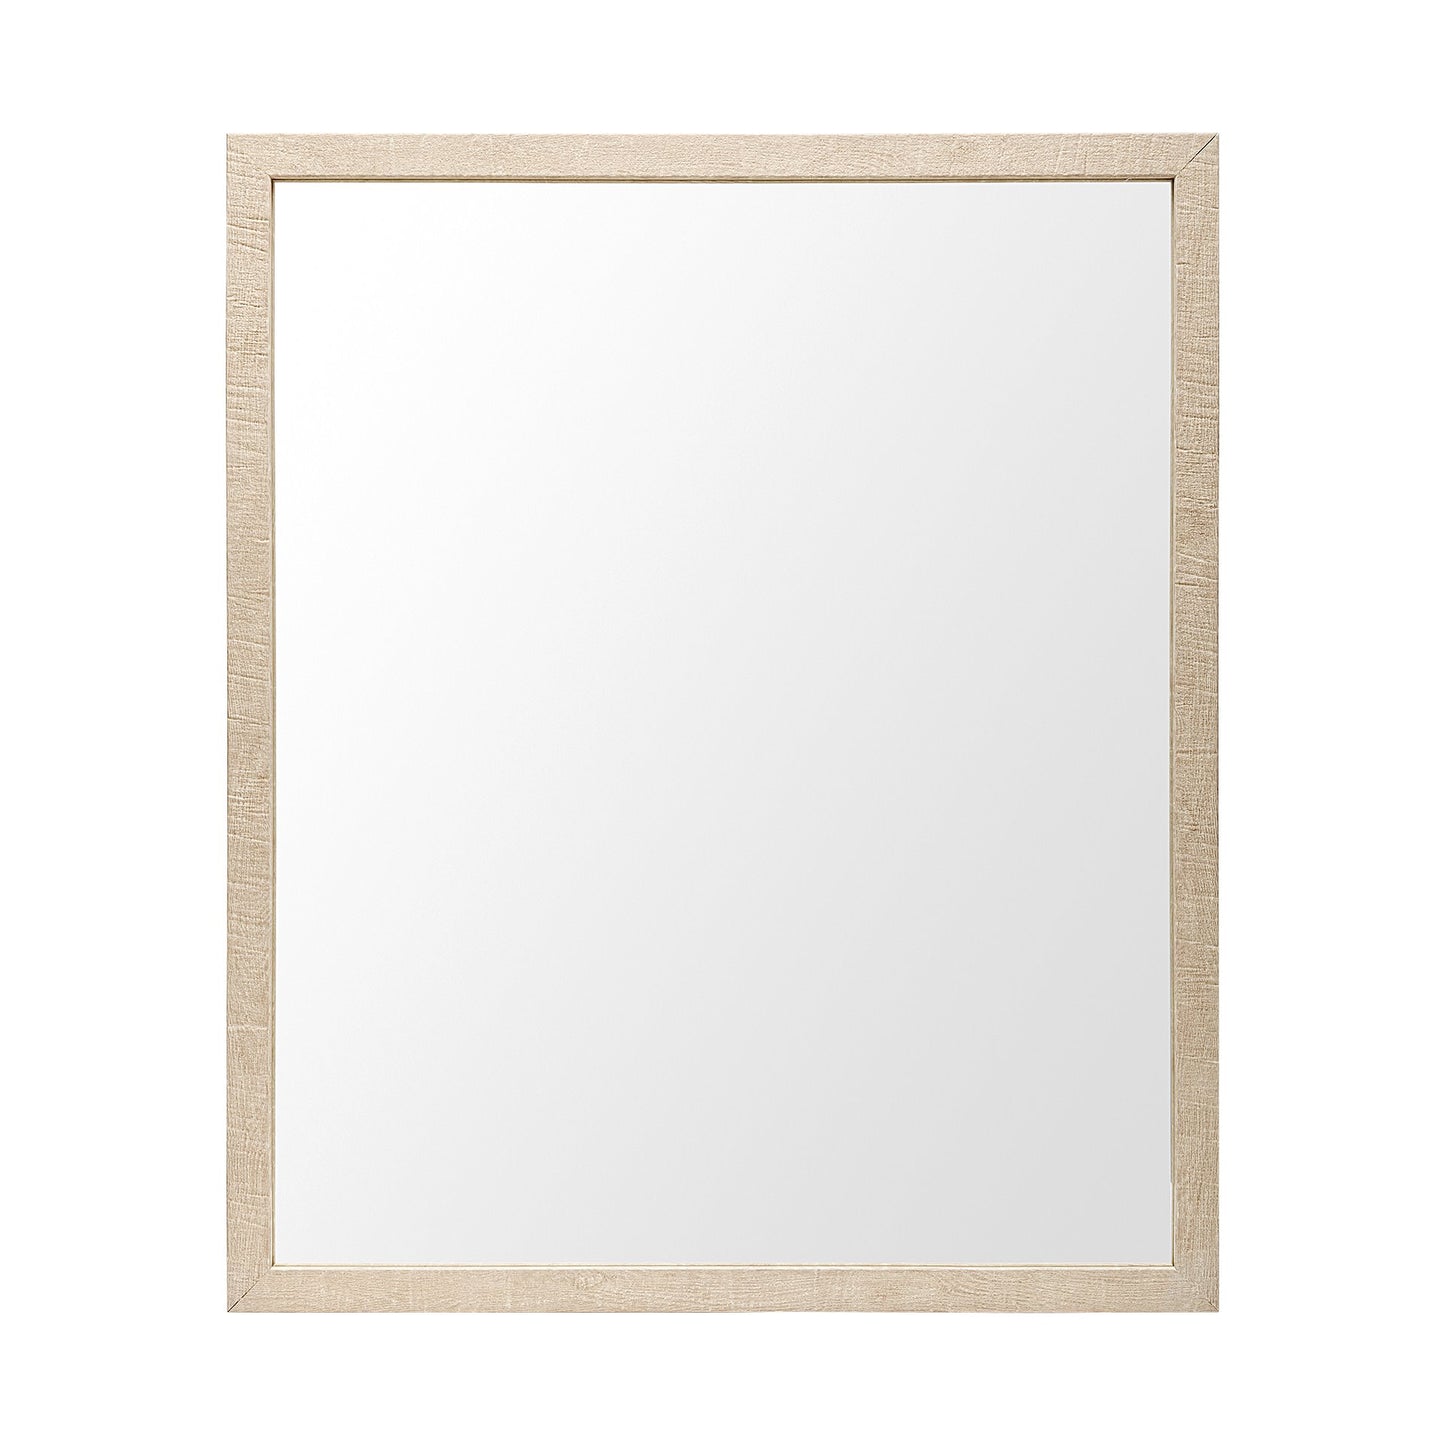 Faux Wood Frame Bathroom Vanity - Tan